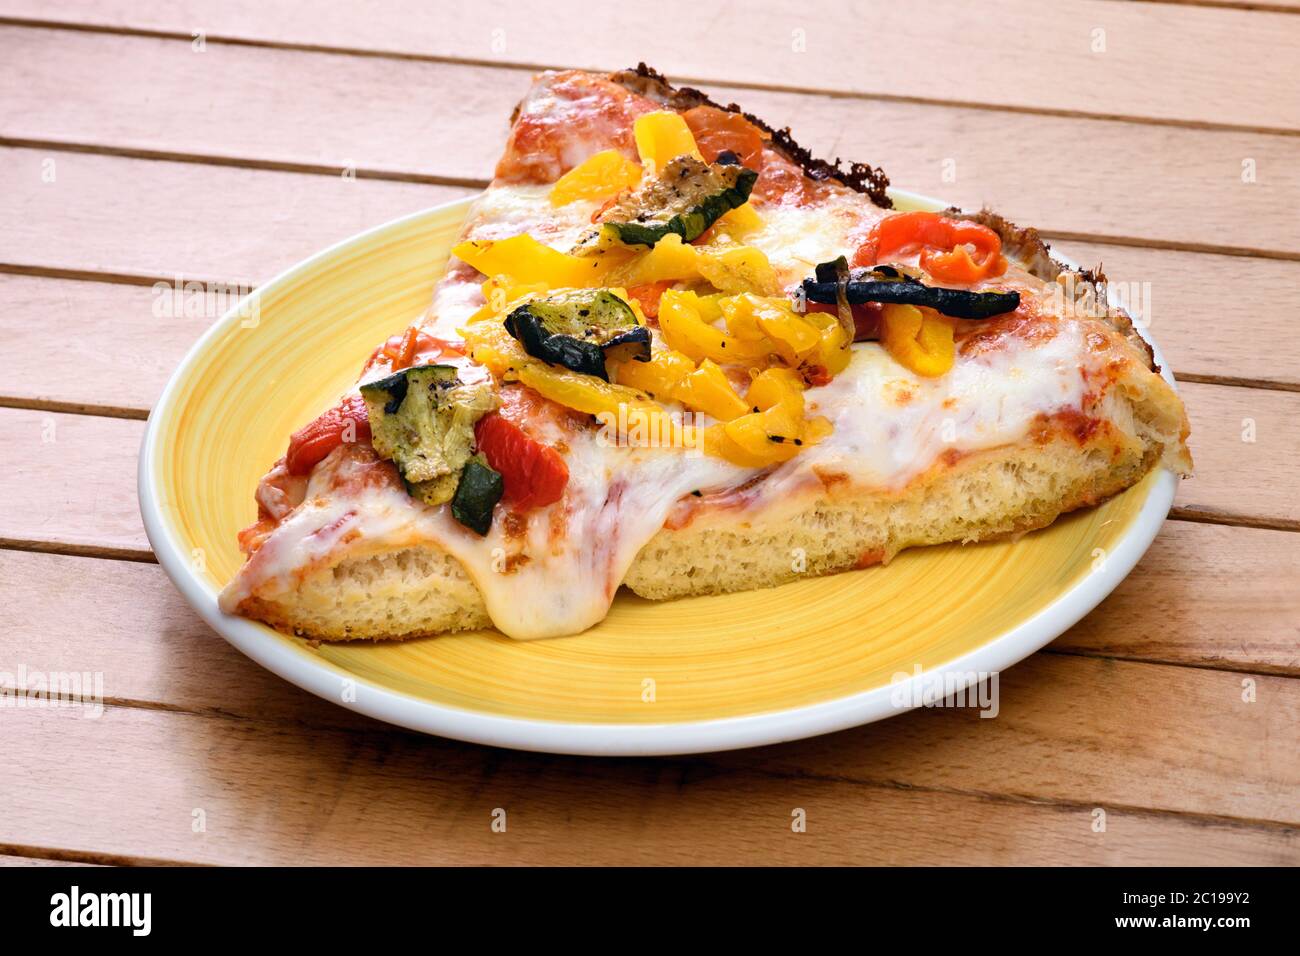 Fetta di pizza tradizionale italiana con condimento di verdure alla griglia su mozzarella fusa servita su un piatto giallo su un tavolo di legno Foto Stock